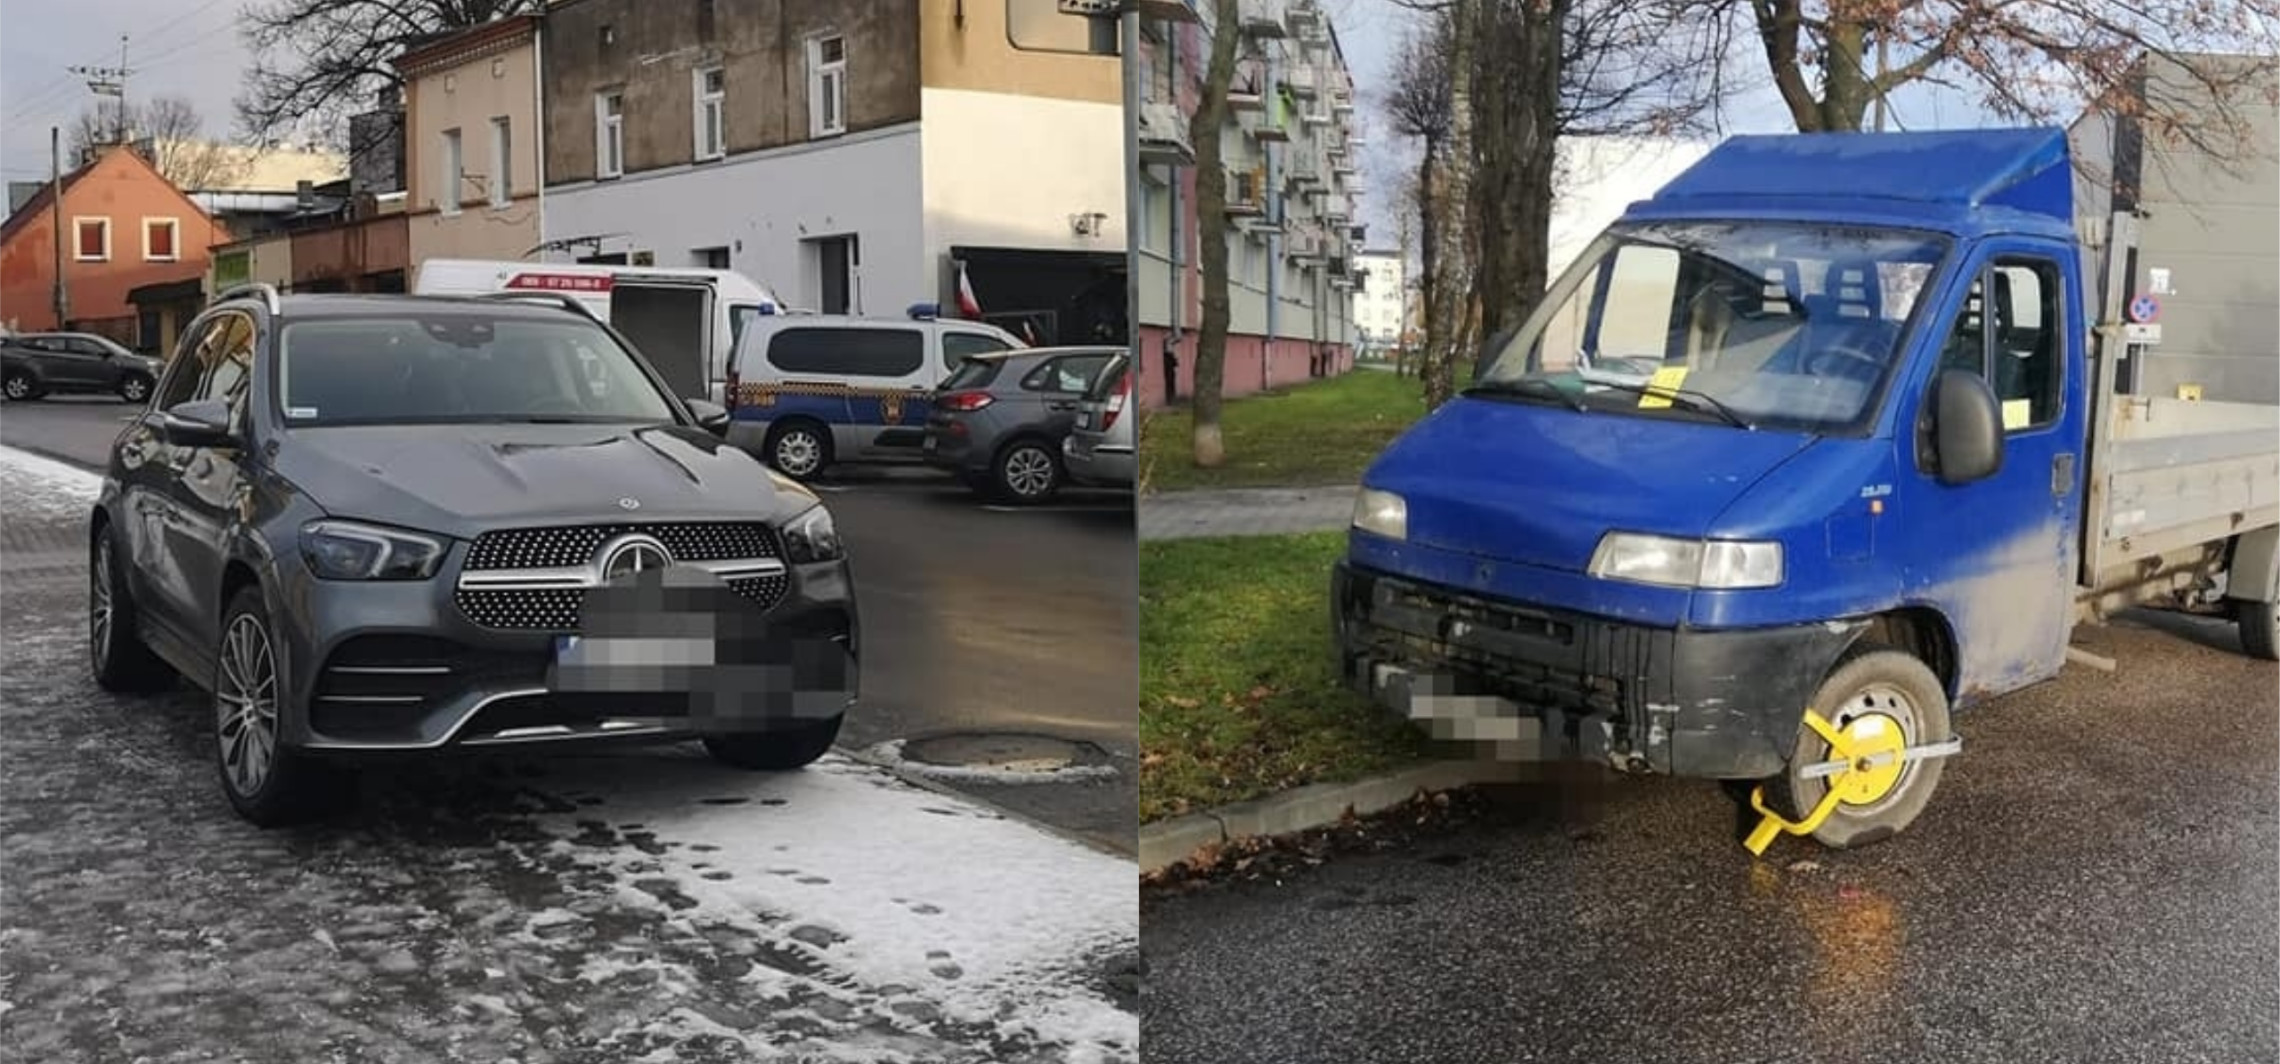 Inowrocław - Dzikie parkowanie w Inowrocławiu. Kierowcy łamią przepisy na potęgę